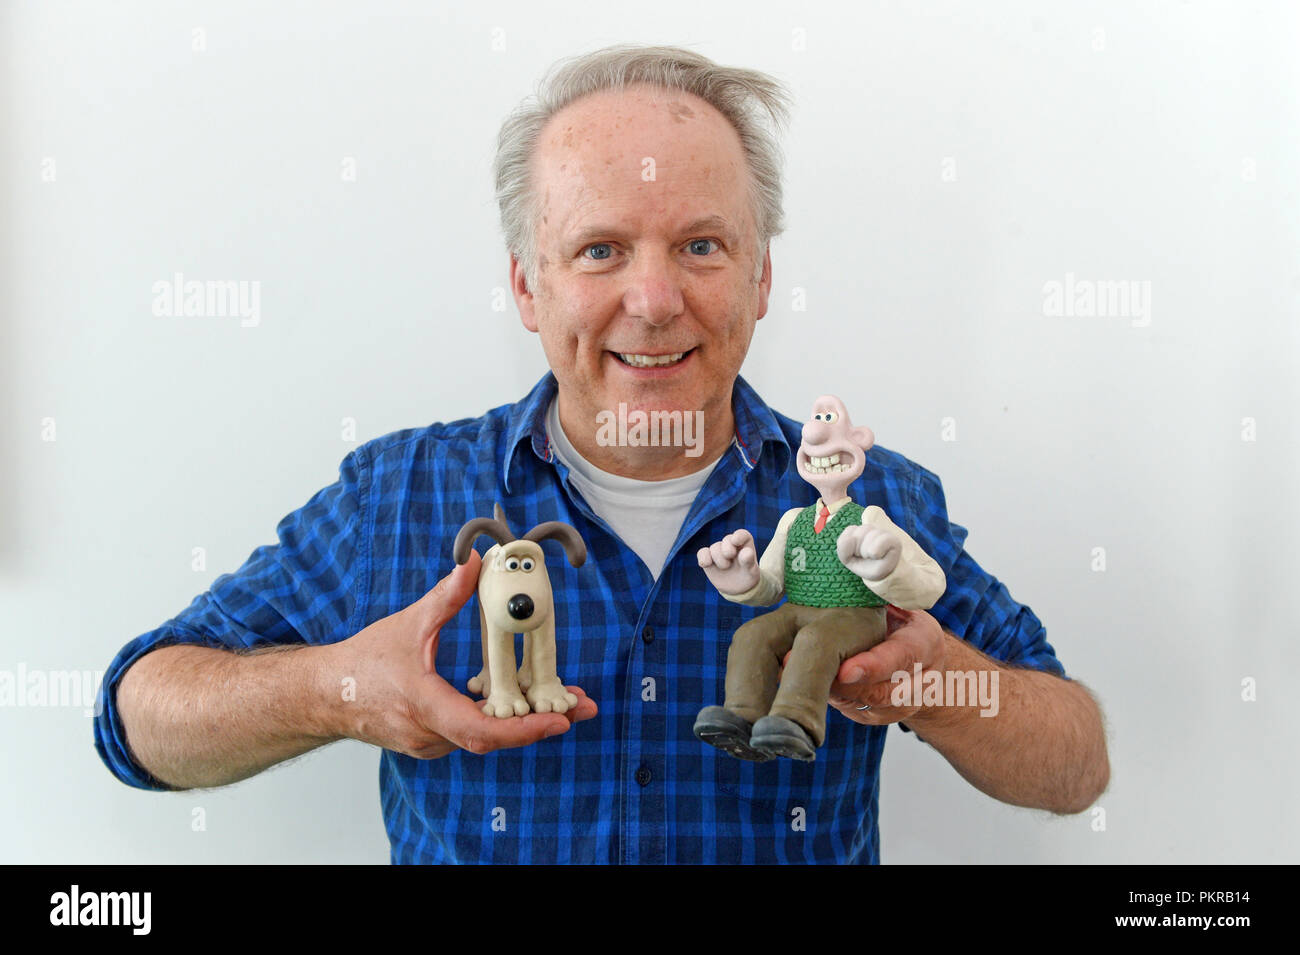 Nick Park directeur animateur et producteur et créateur de Wallace et Gromit et Shaun le mouton Shetland au scénario 2018 de donner une entrevue à la presse Banque D'Images